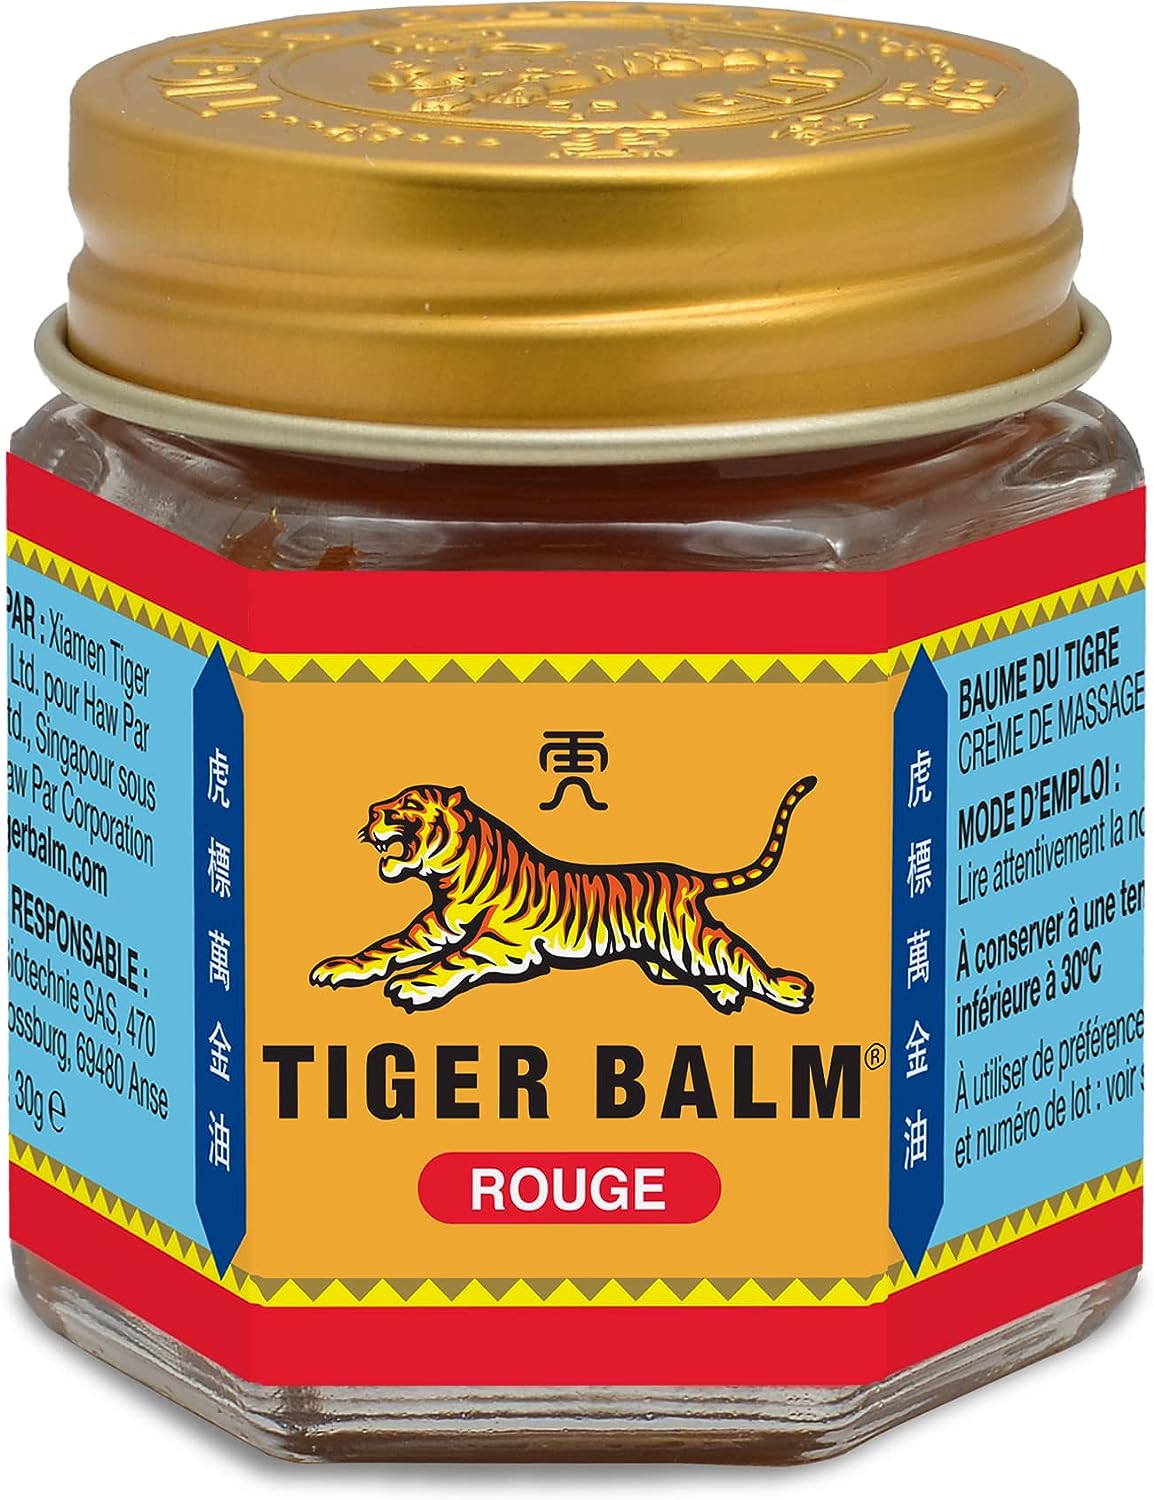 Créme de massage (Tiger Balm rouge)